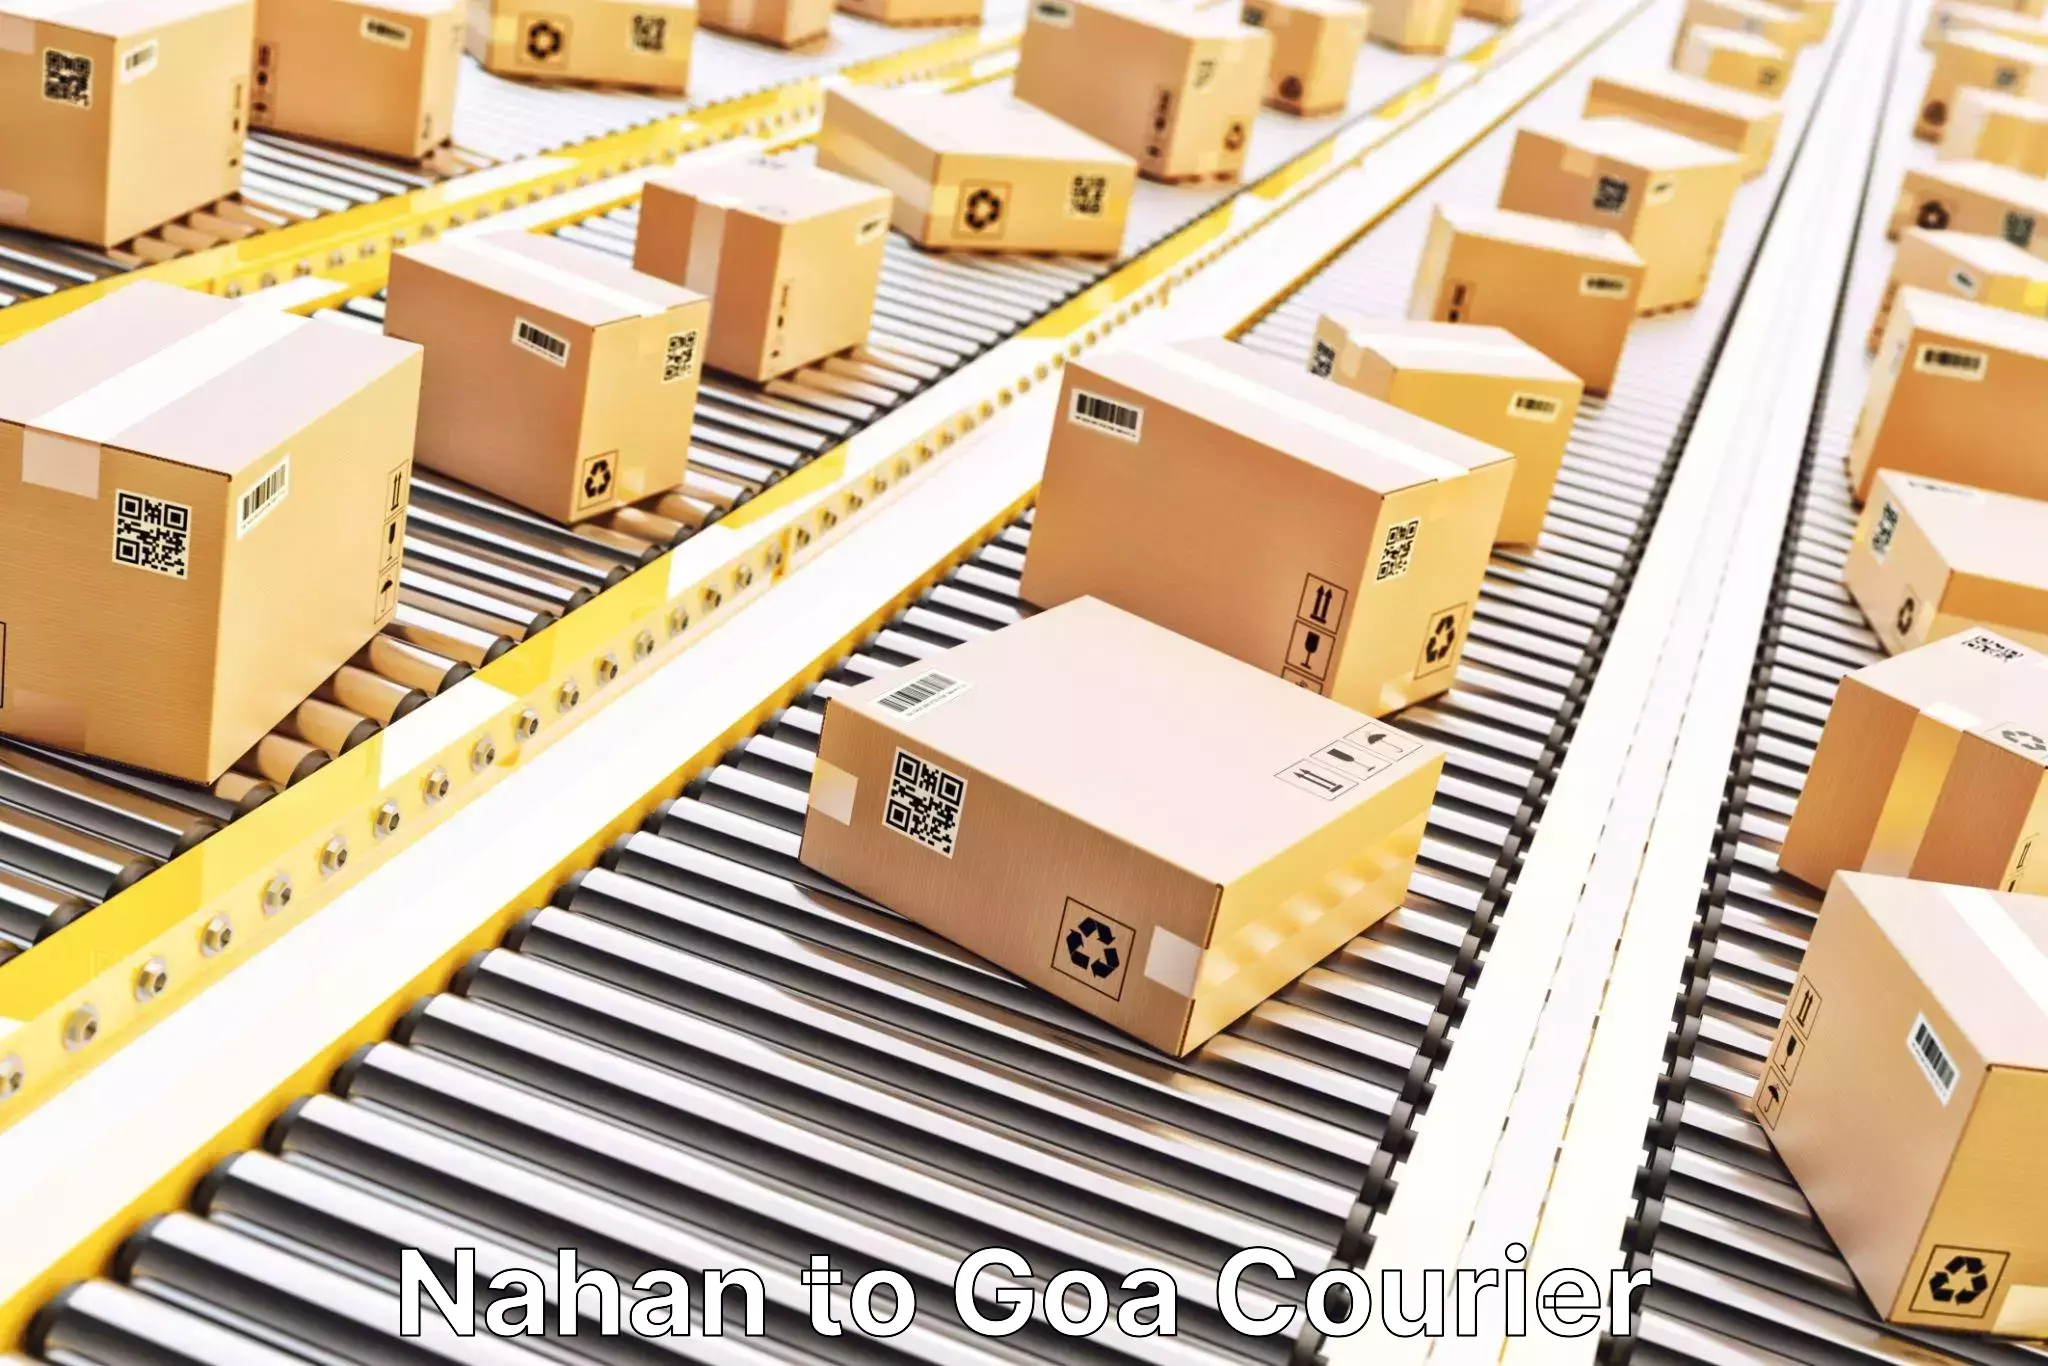 24/7 shipping services Nahan to Goa